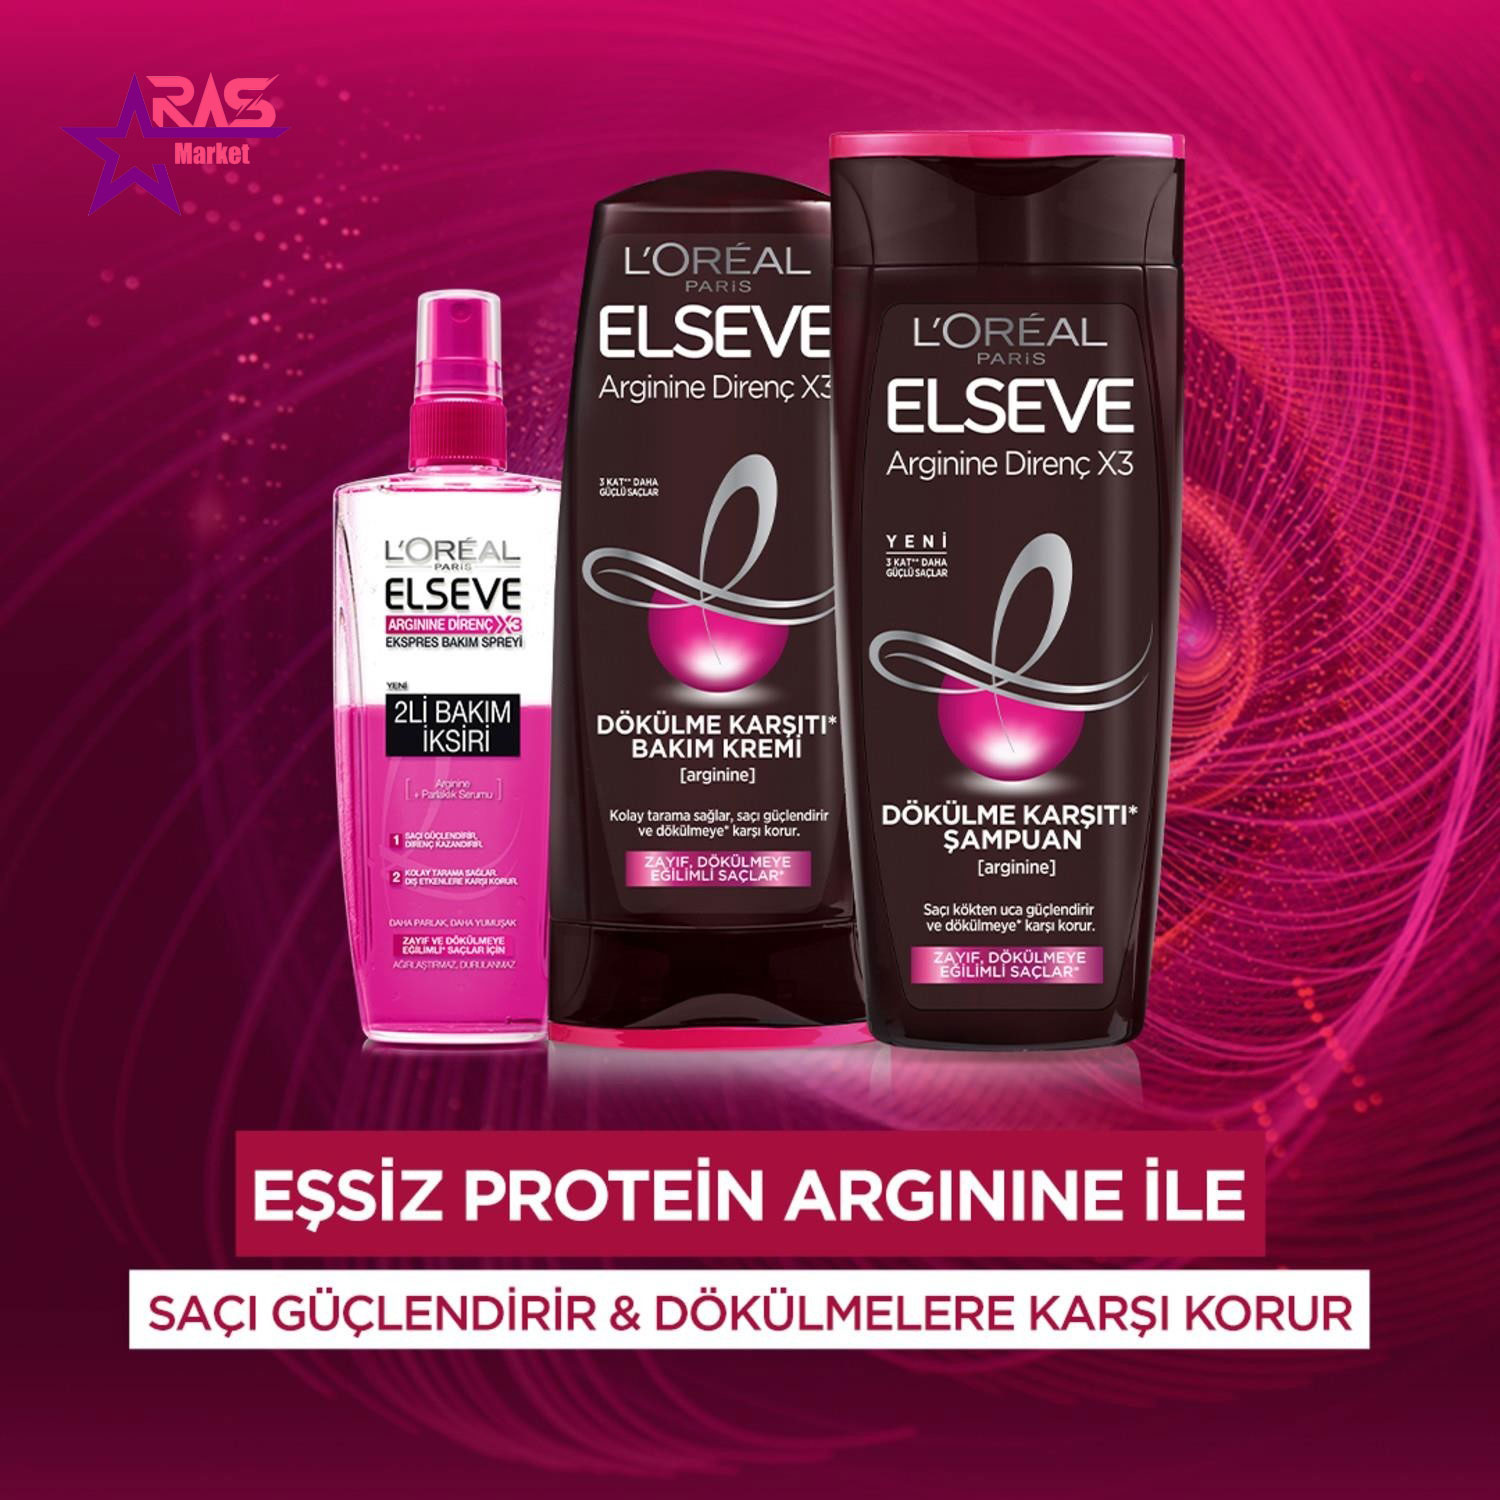 شامپو لورآل سری ELSEVE مدل Arginine Direnç X3 ضد ریزش مو ۴۵۰ میلی لیتر ، خرید اینترنتی محصولات شوینده و بهداشتی ، ارس مارکت